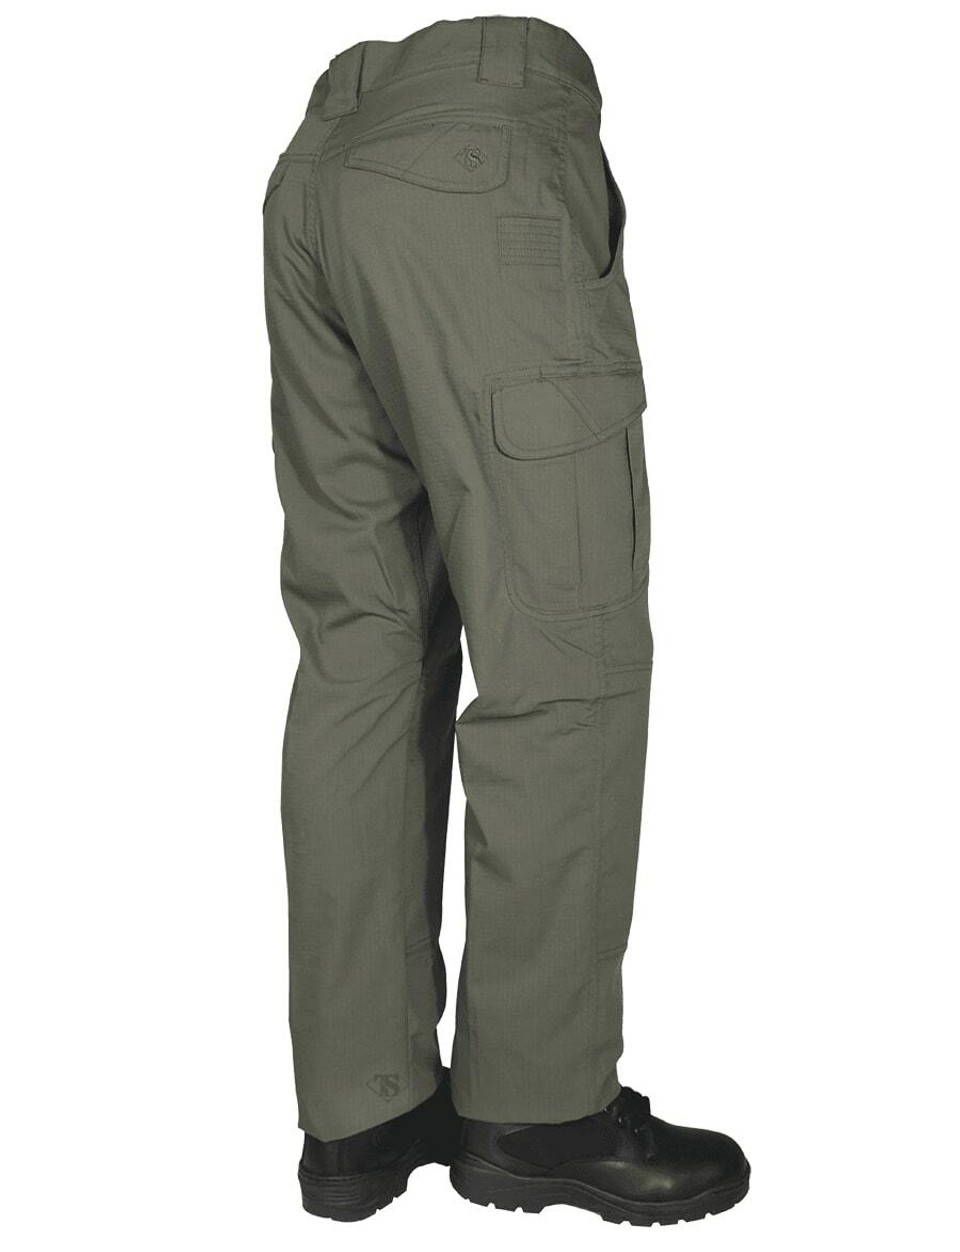 TRU-SPEC 24-7 Series Men's Ascent Pants